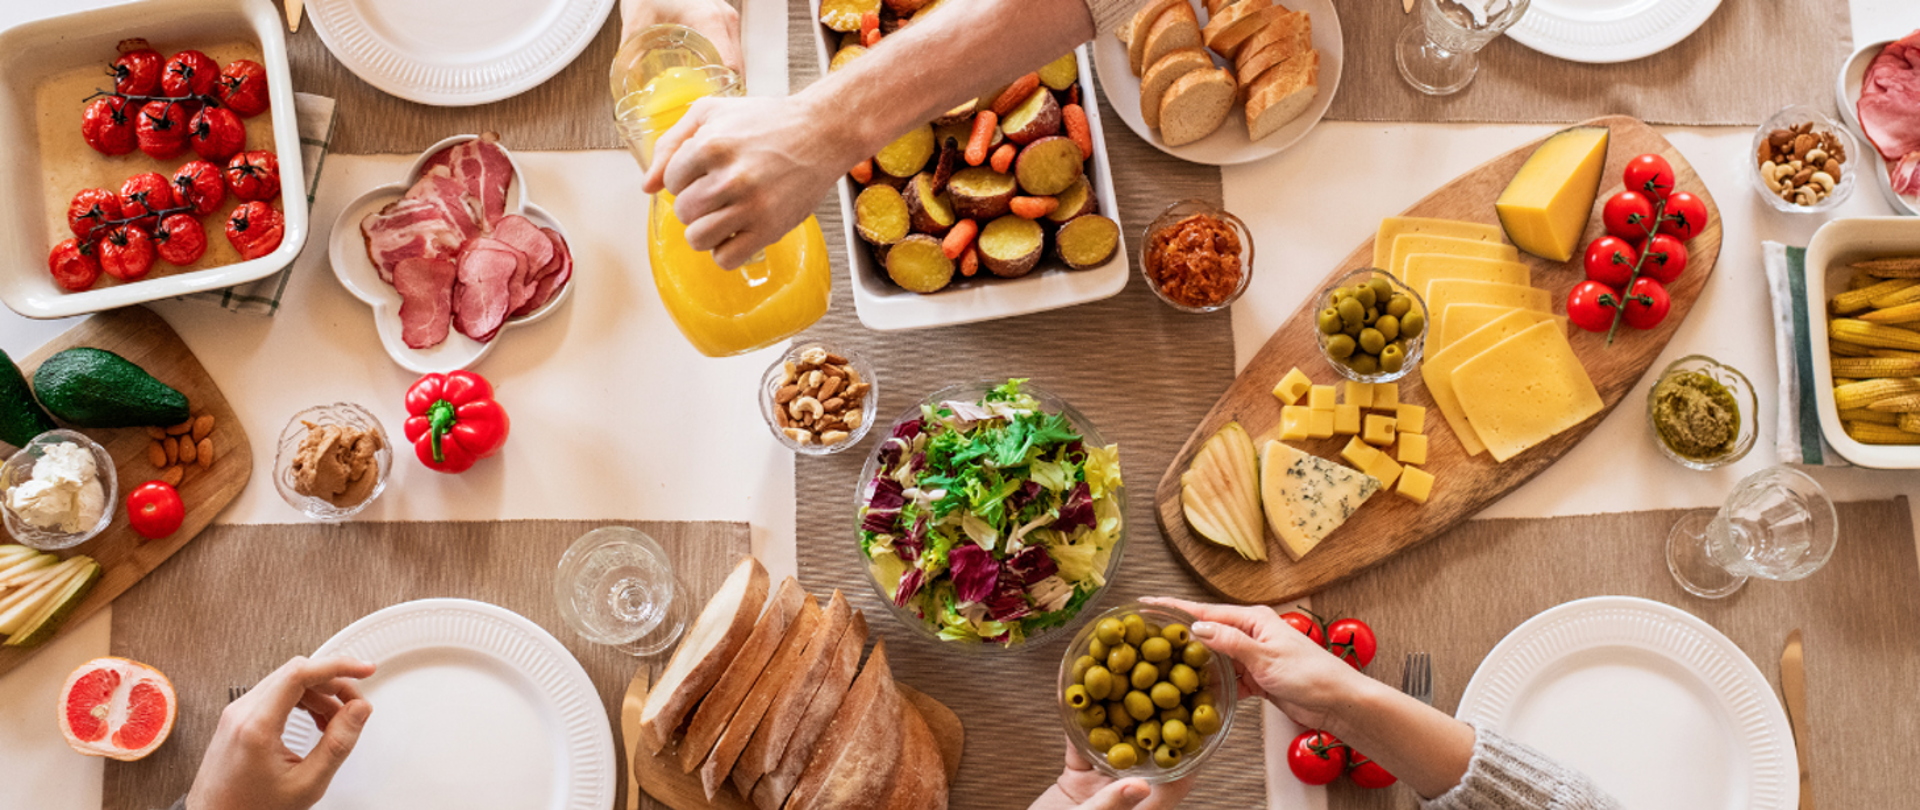 Zdjęcie przedstawia stół zastawiony zdrowym i bezpiecznym jedzeniem